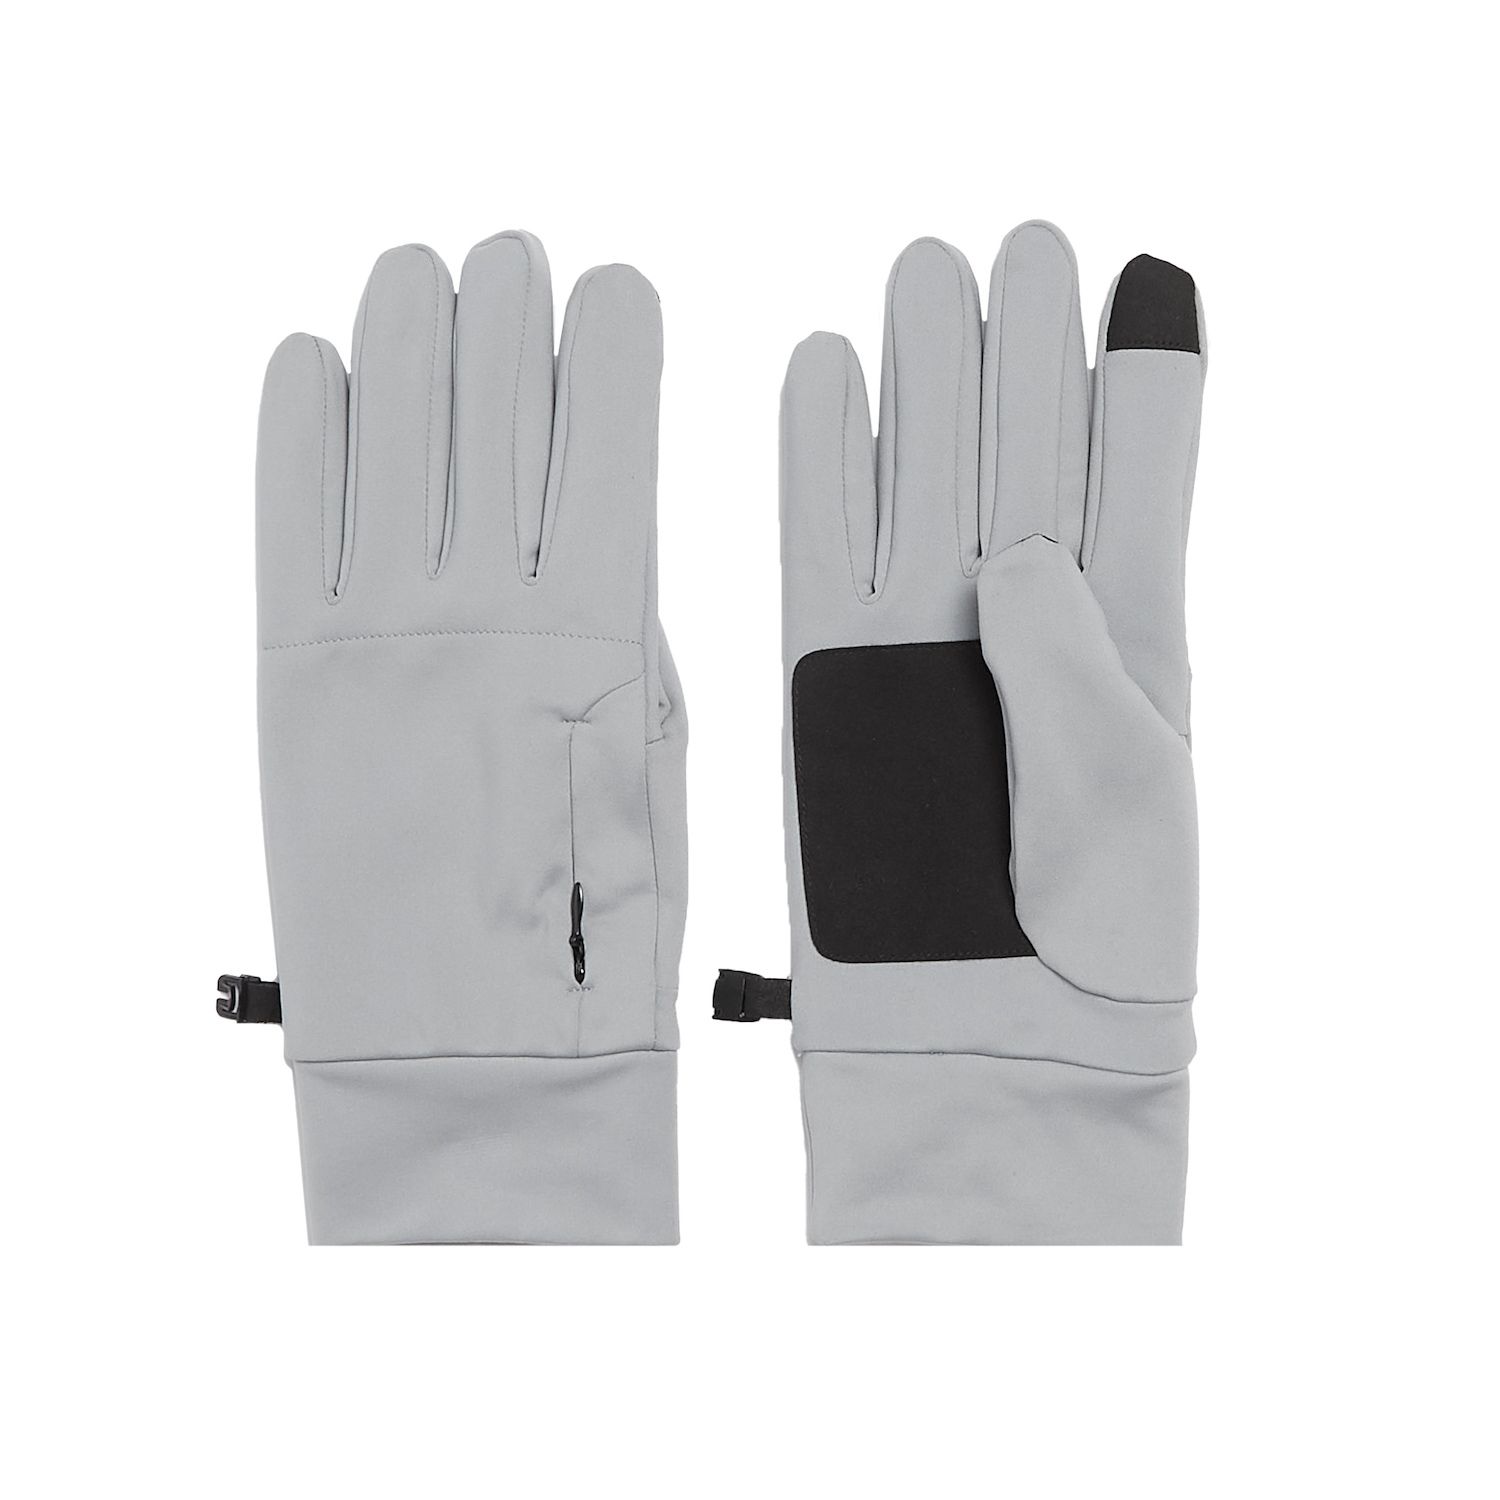 Image for HeatKeep Men's Gray Touchscreen Gloves at Kohl's.